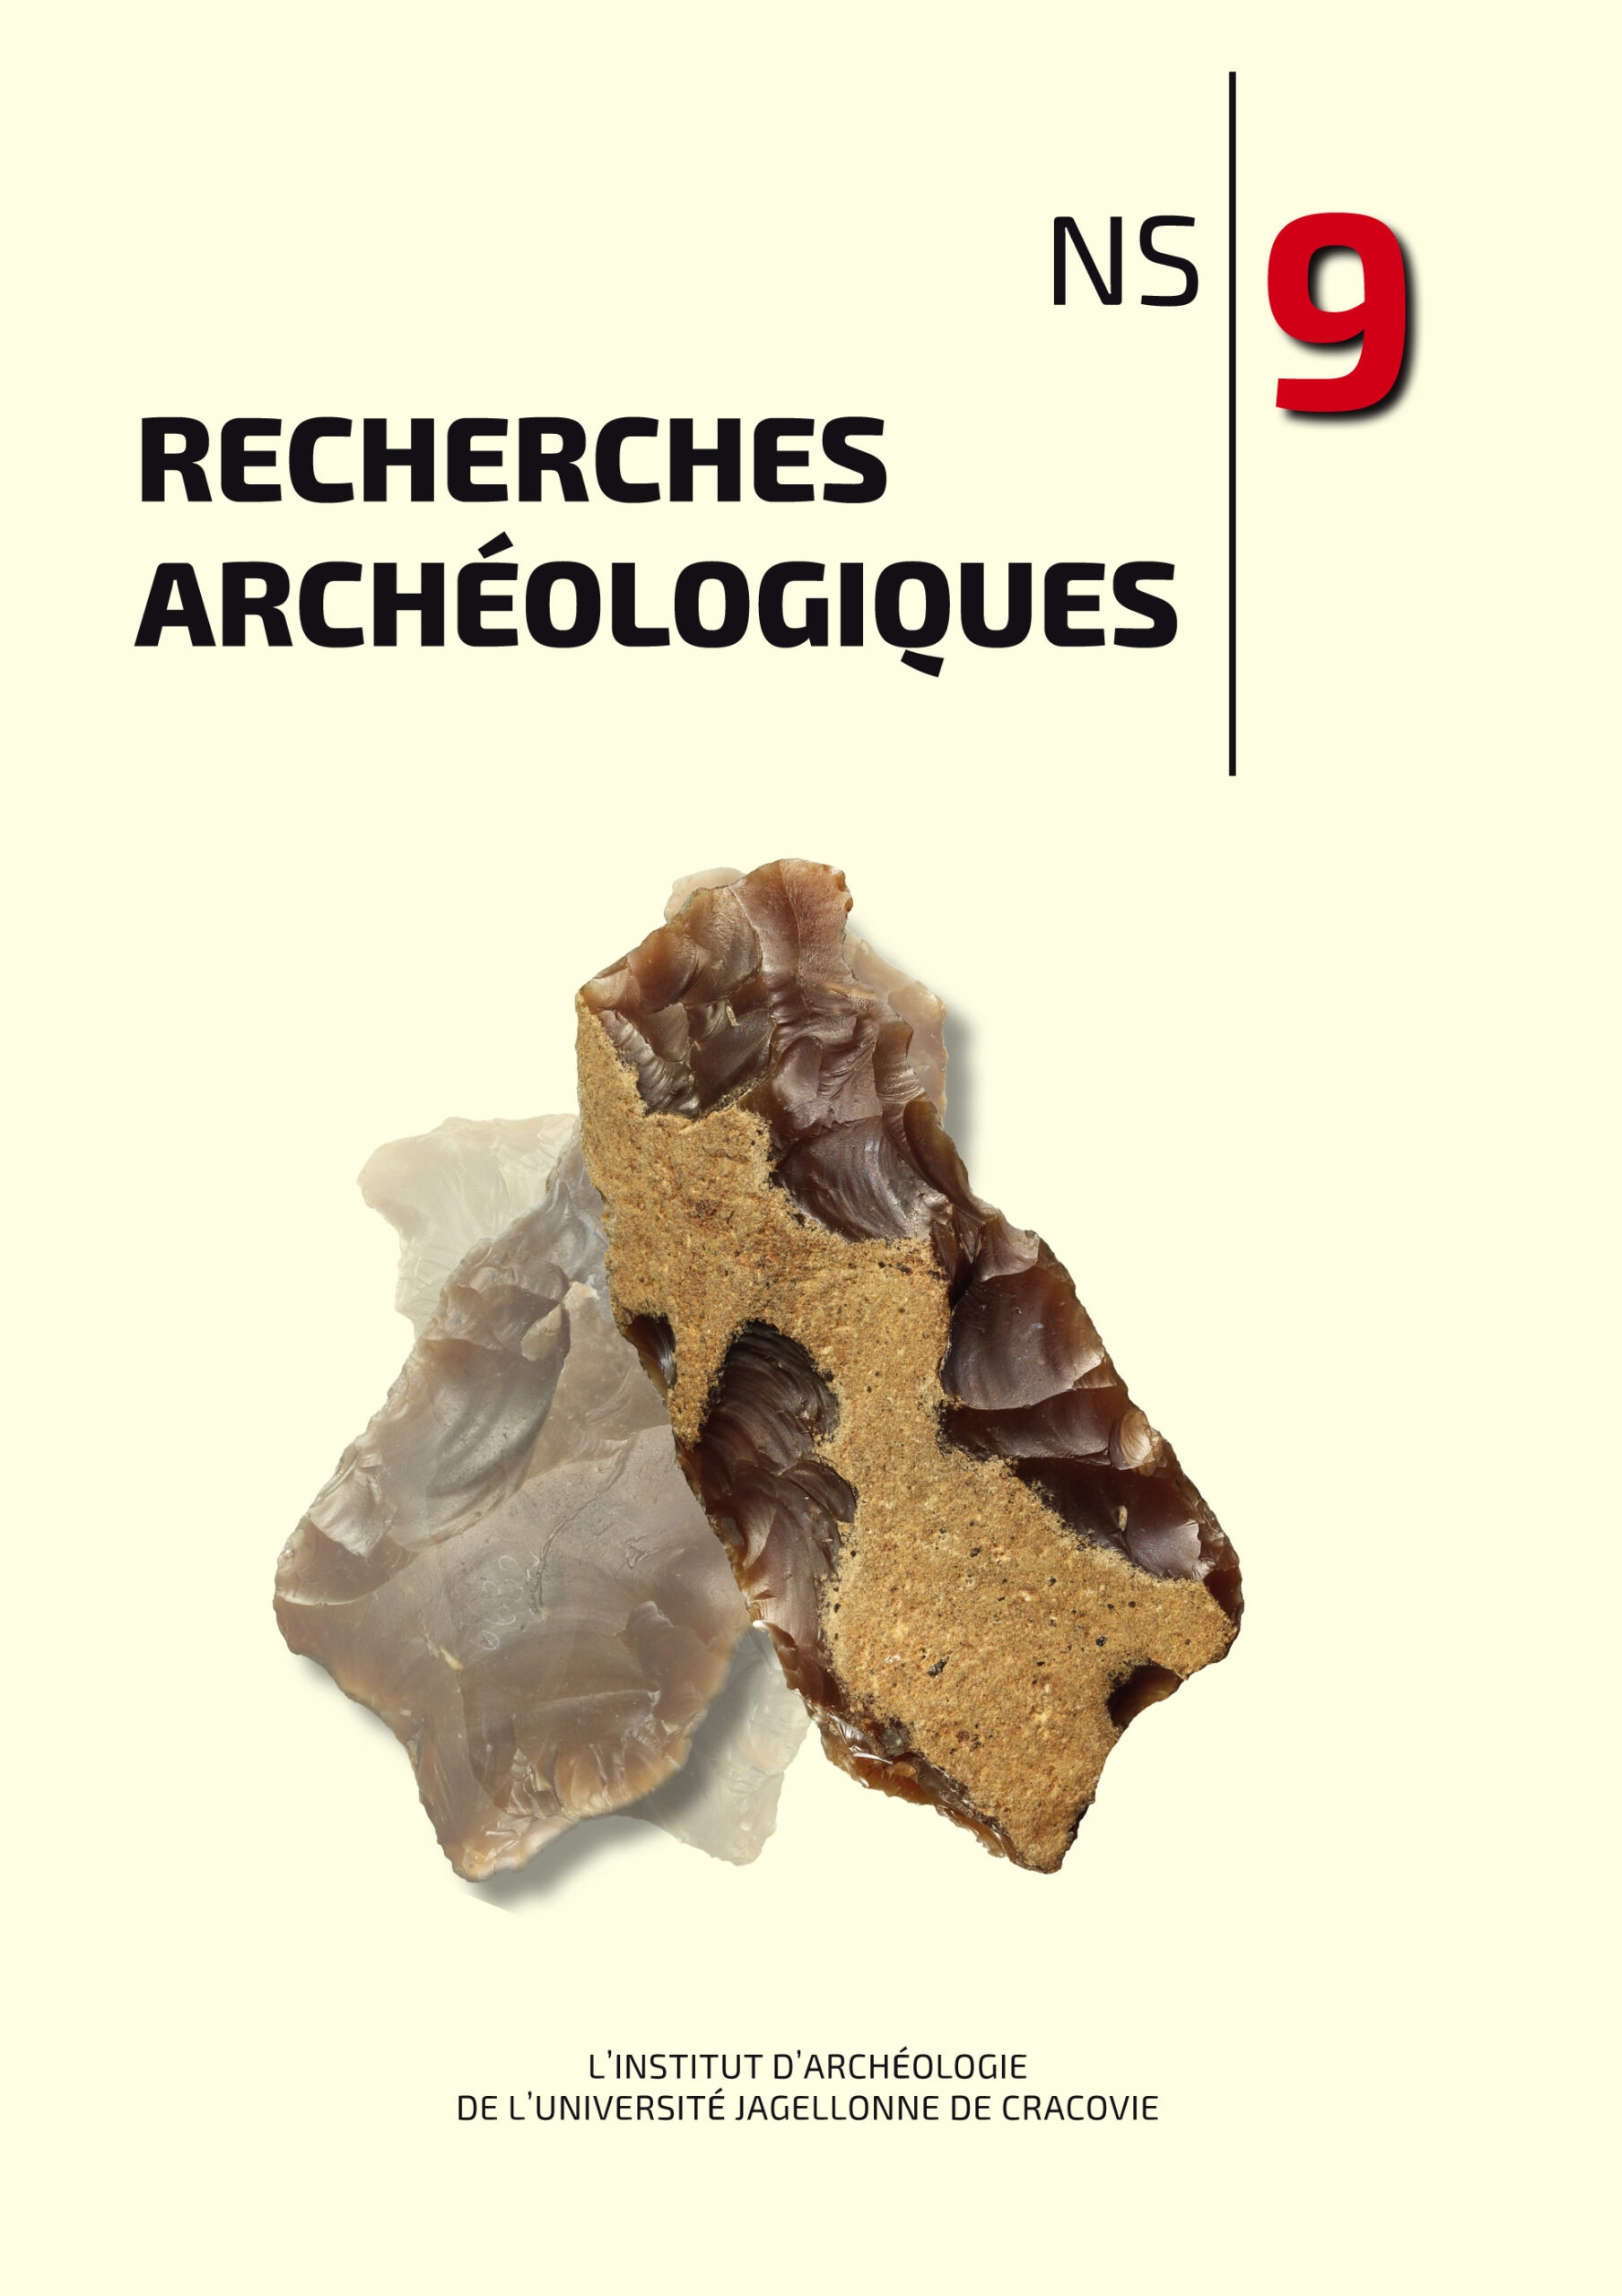 Recherches Archéologiques. NS 3